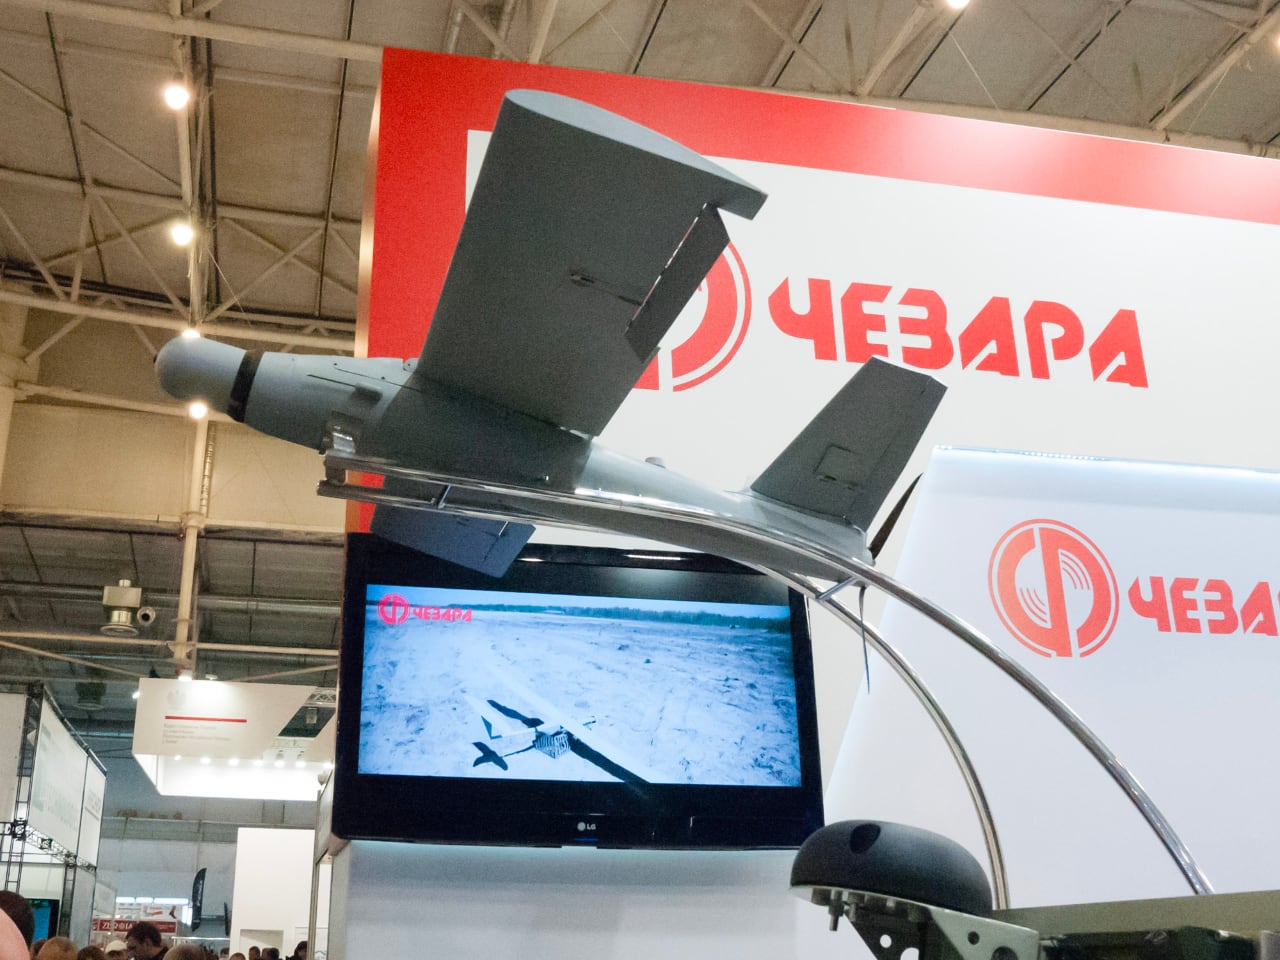 Oekraïens leger begint Poolse Warmate kamikaze drones te gebruiken: een blik op de mogelijkheden van deze spervuurmunitie-5